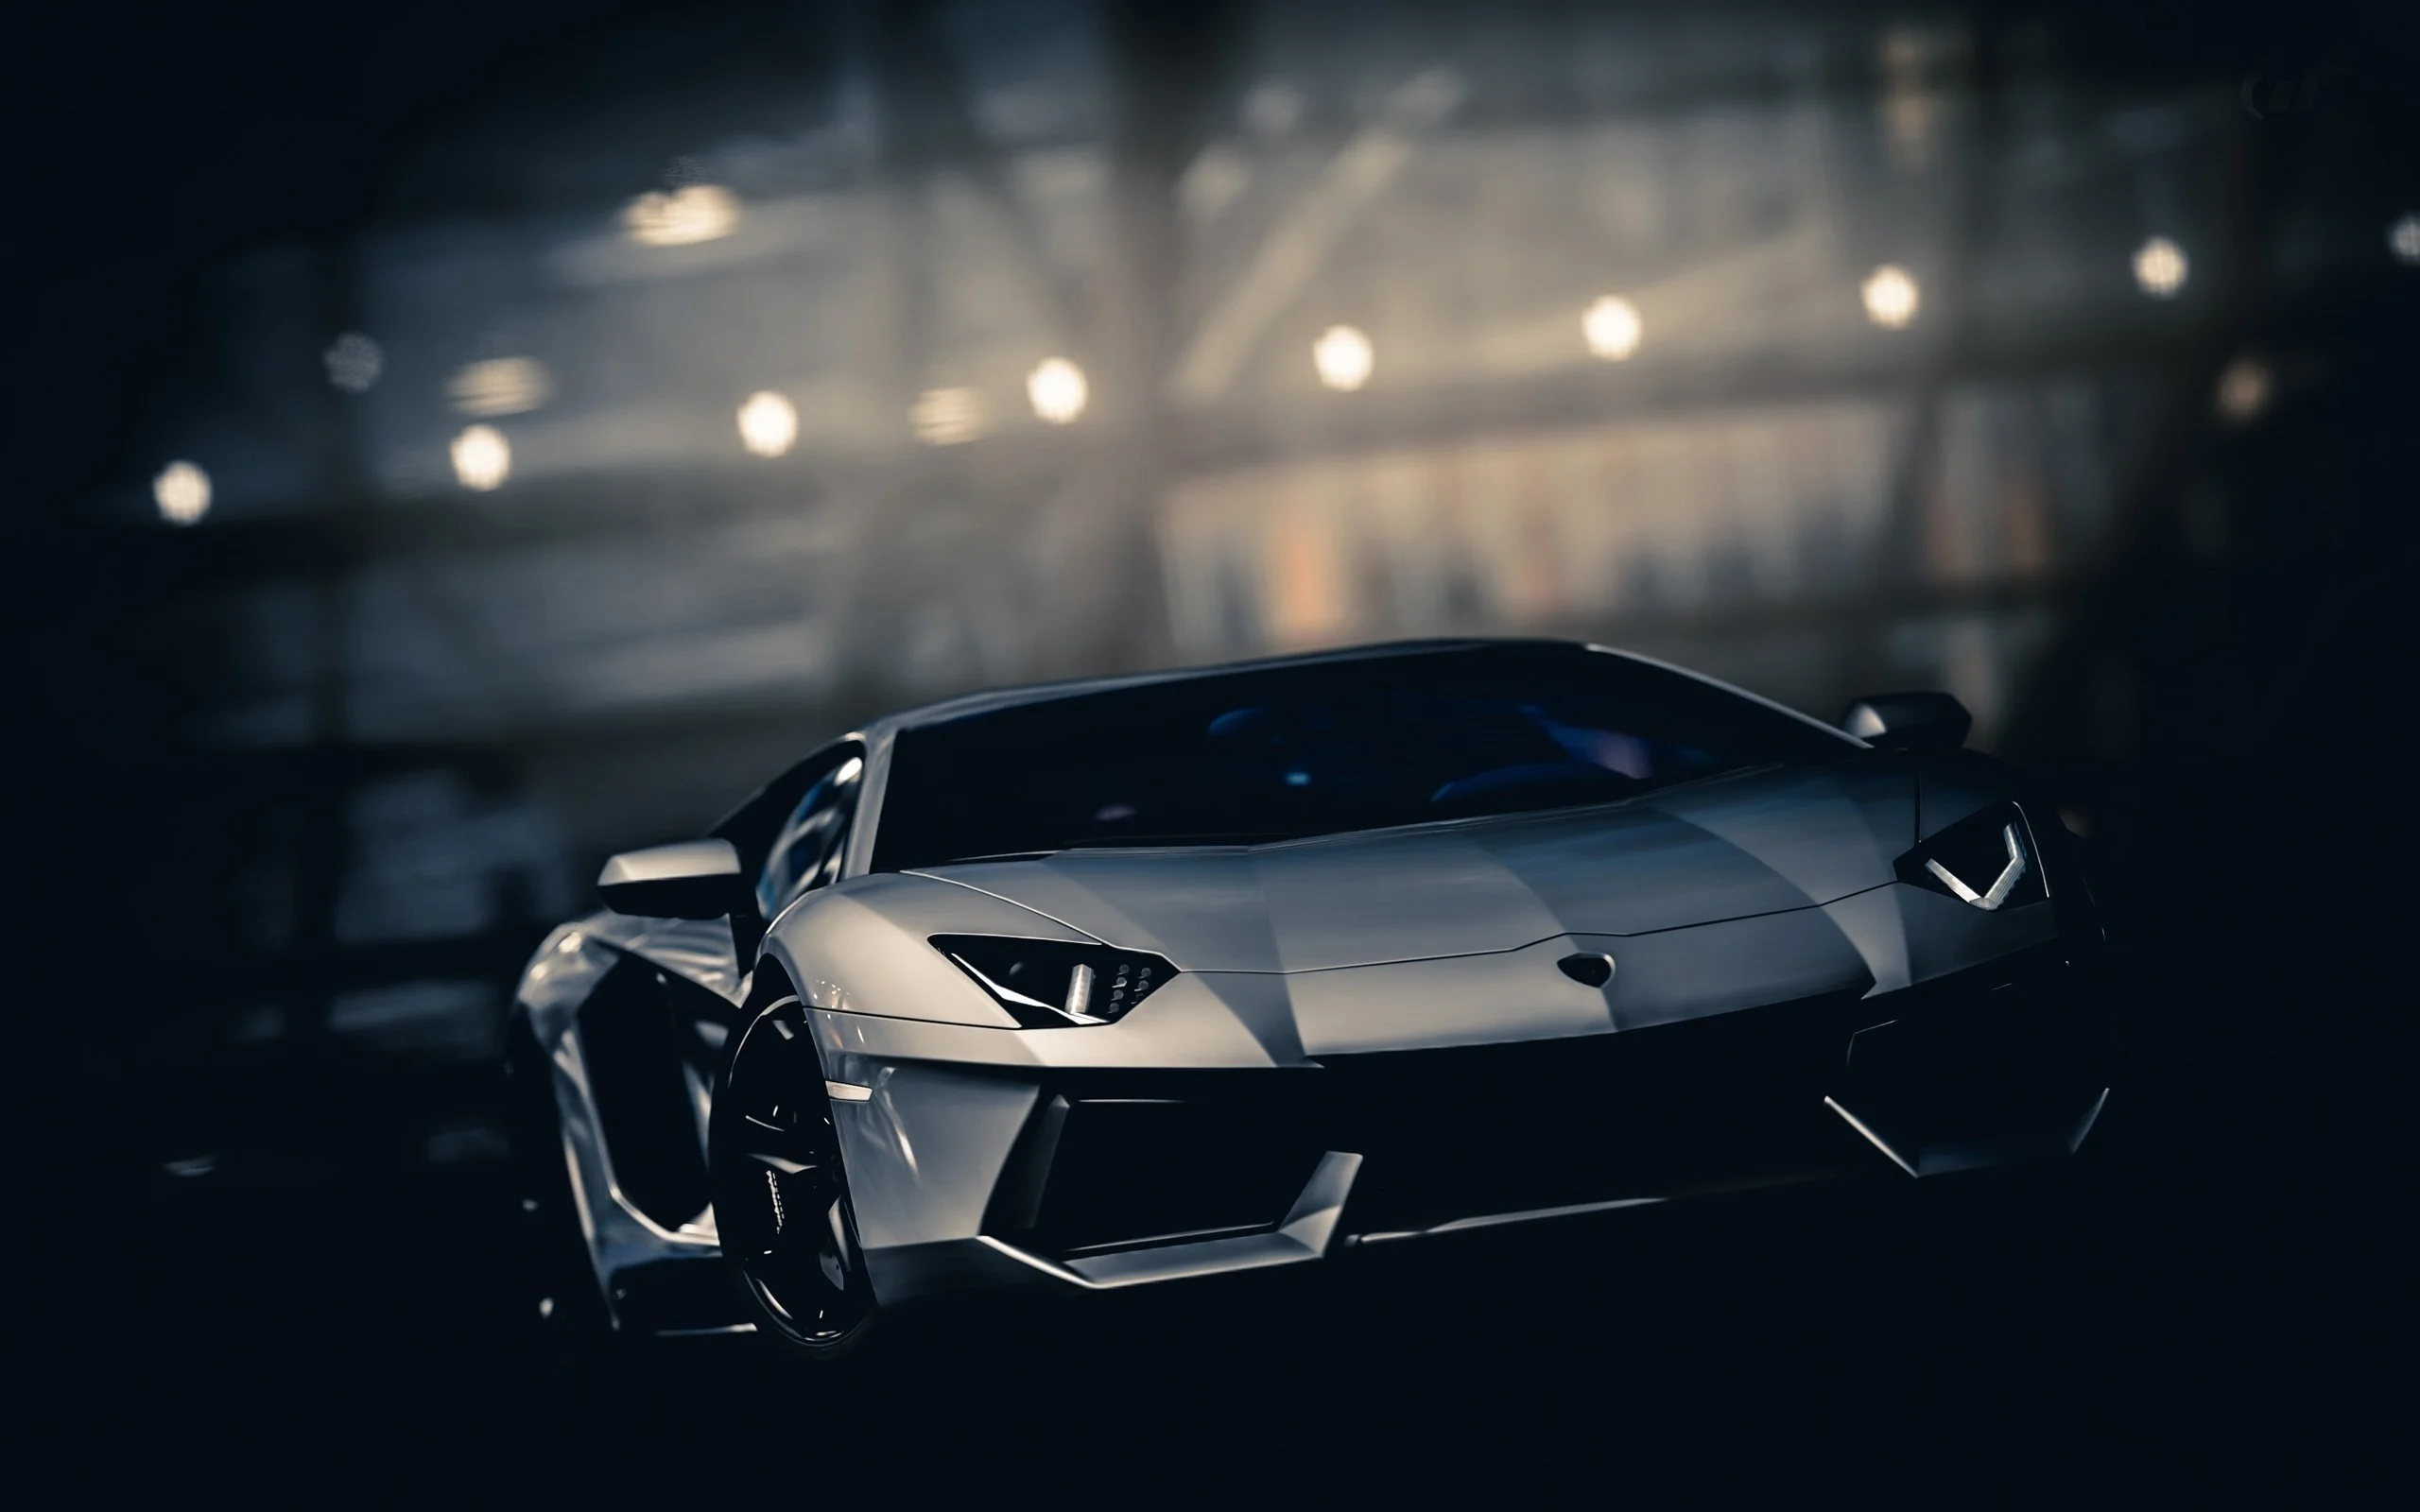 Khẳng định vị thế đẳng cấp với hình nền Lamborghini, là biểu tượng của sự sang trọng và hiệu năng. Tự hào khoe rực rỡ đẳng cấp của mình với những bức hình nền Lamborghini đẹp mắt, điều này sẽ không làm bạn thất vọng.